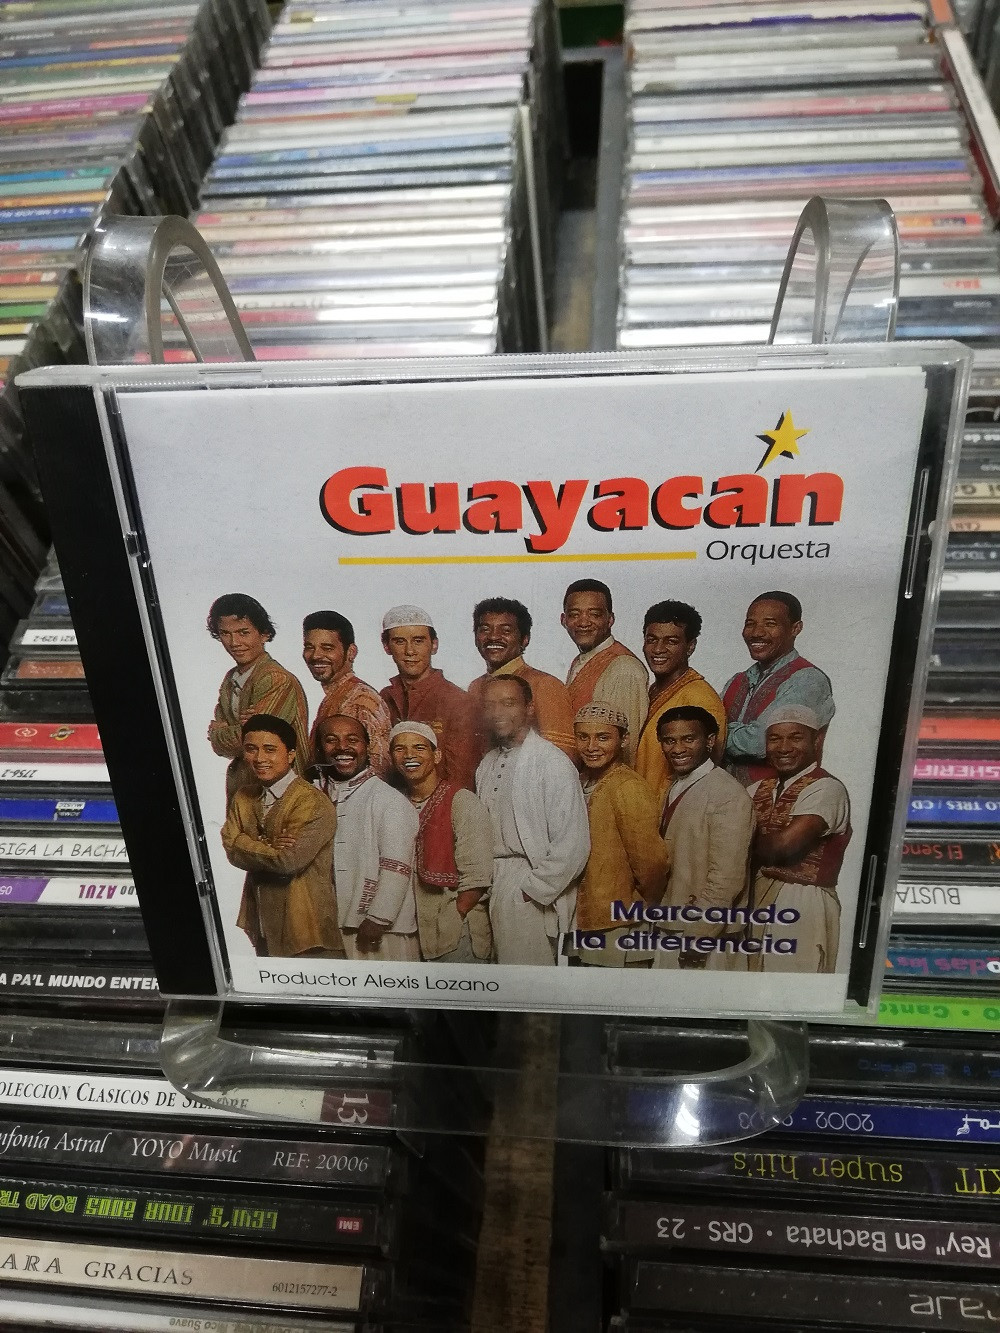 Imagen CD GUAYACÁN ORQUESTA - MARCANDO LA DIFERENCIA 1